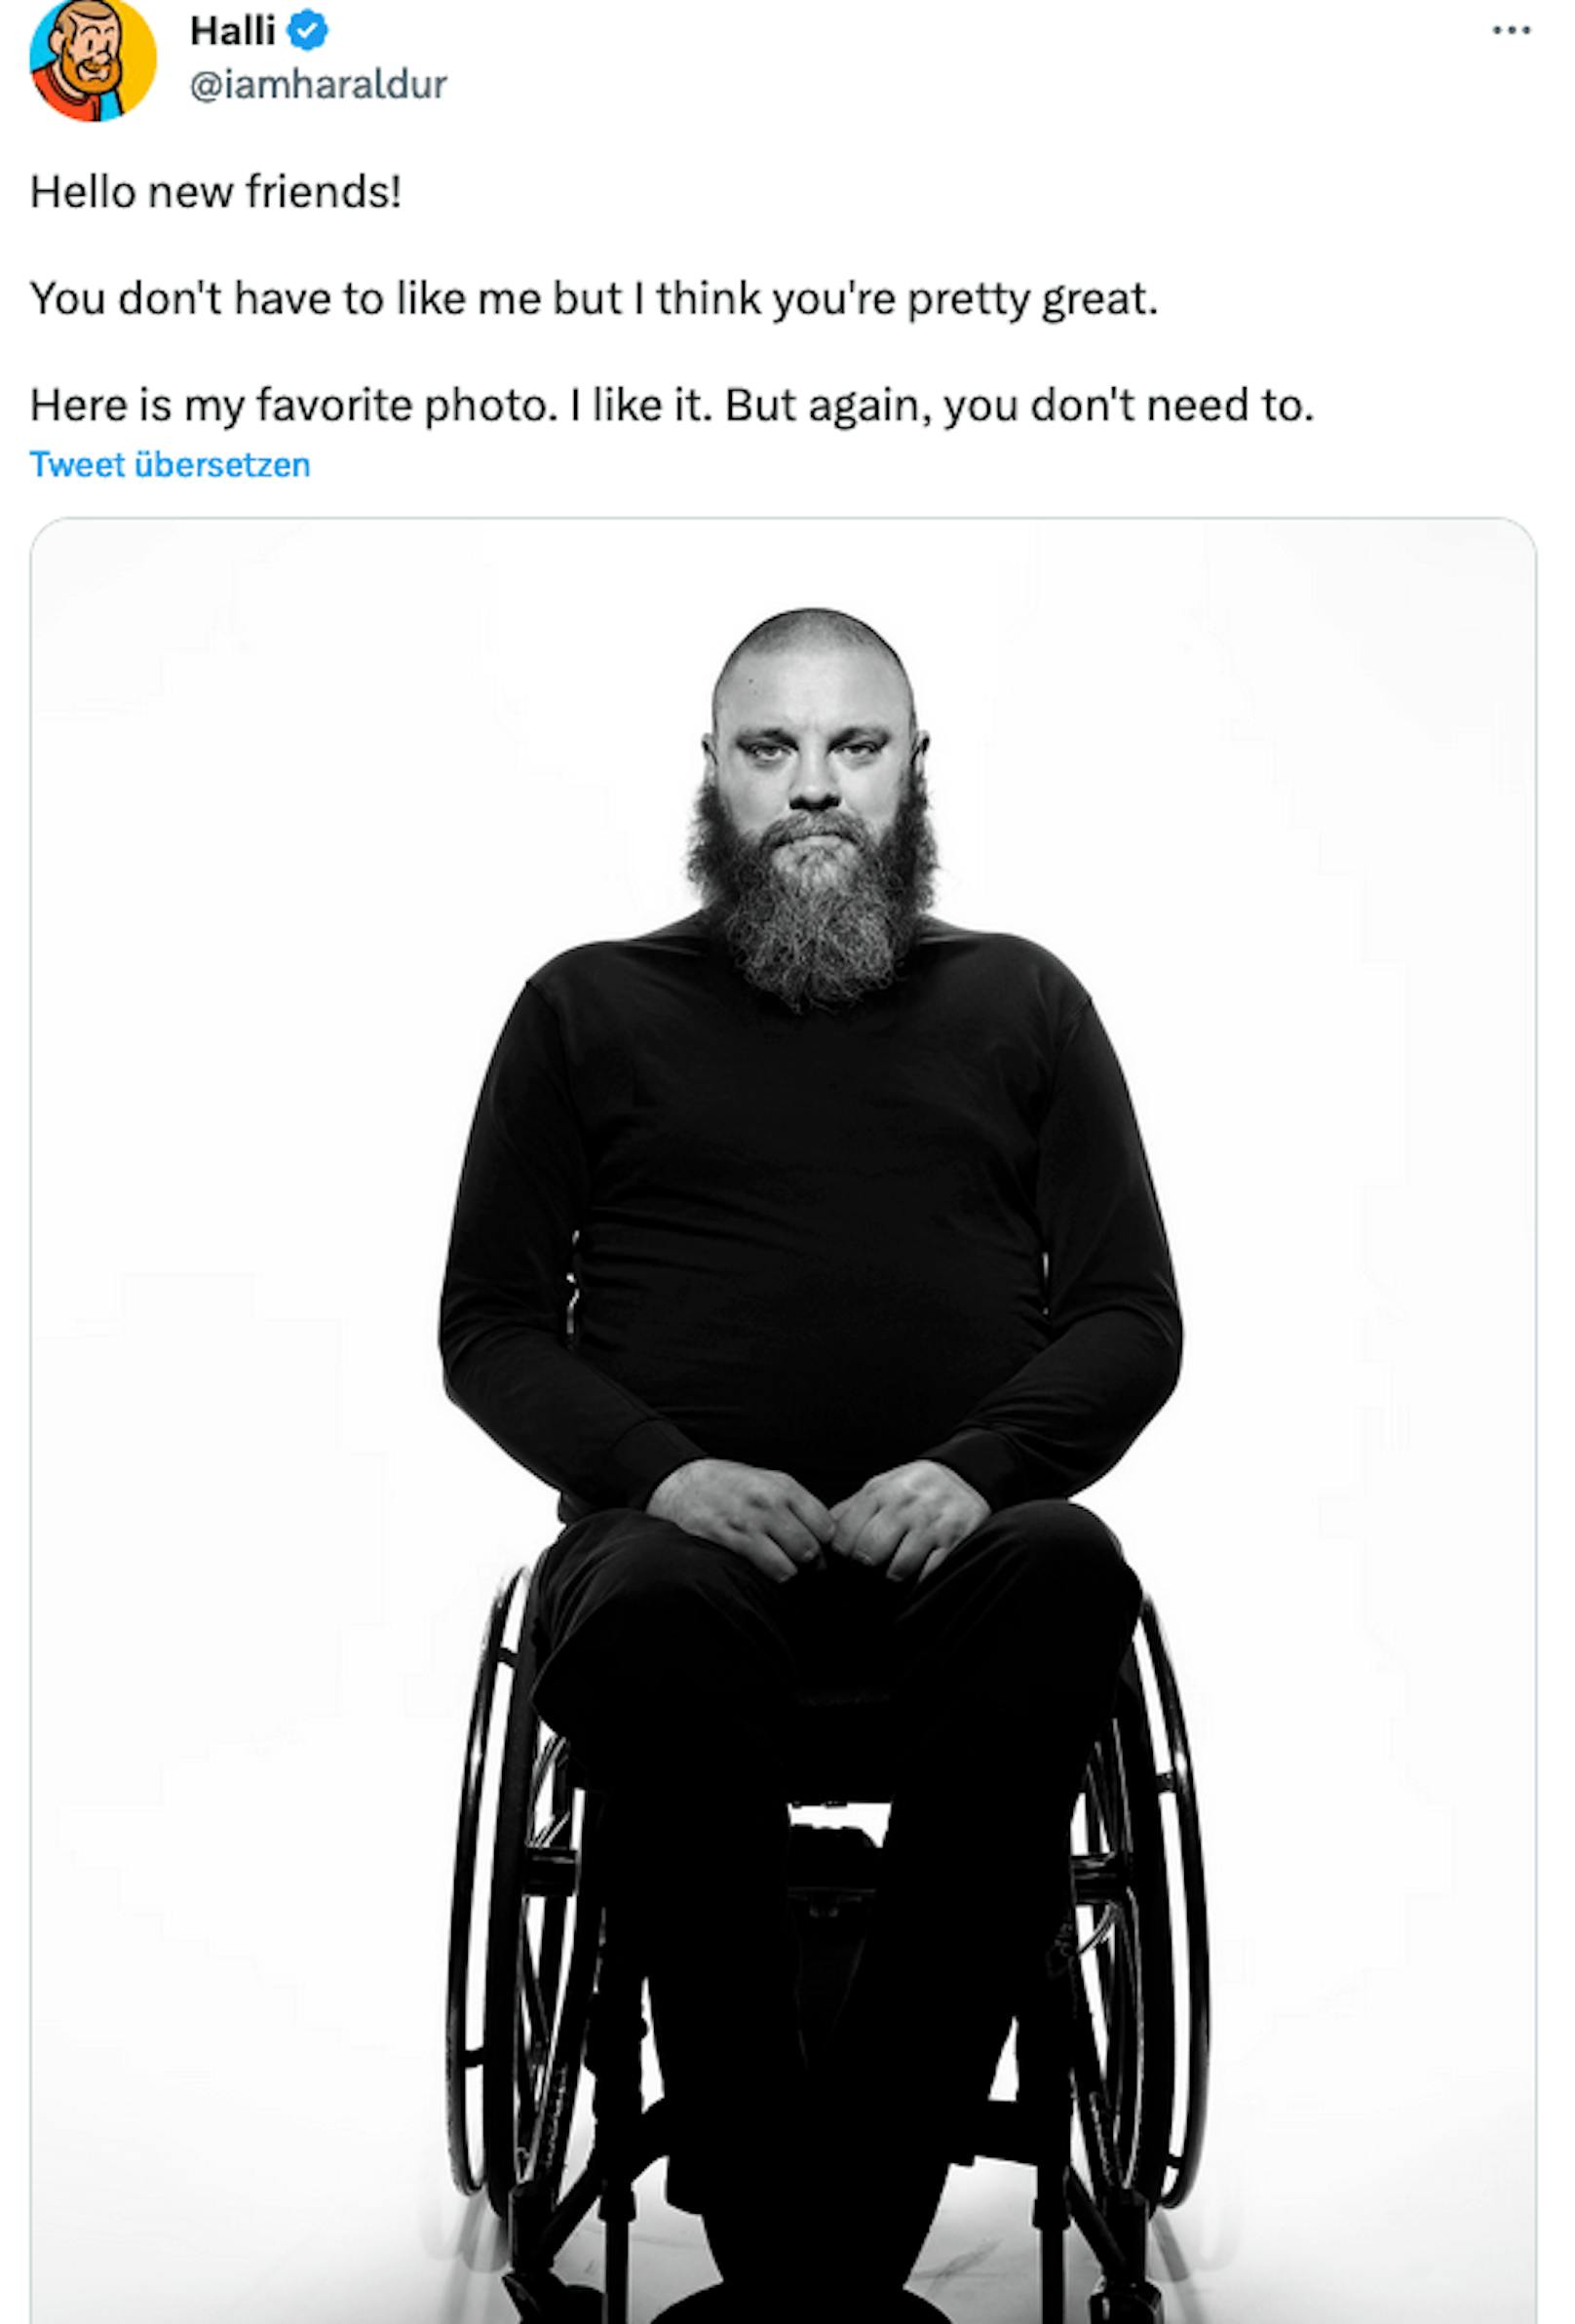 Haraldur Thorleifsson, der wegen einer Erkrankung im Rollstuhl sitzt, startete das Gespräch auf Twitter.